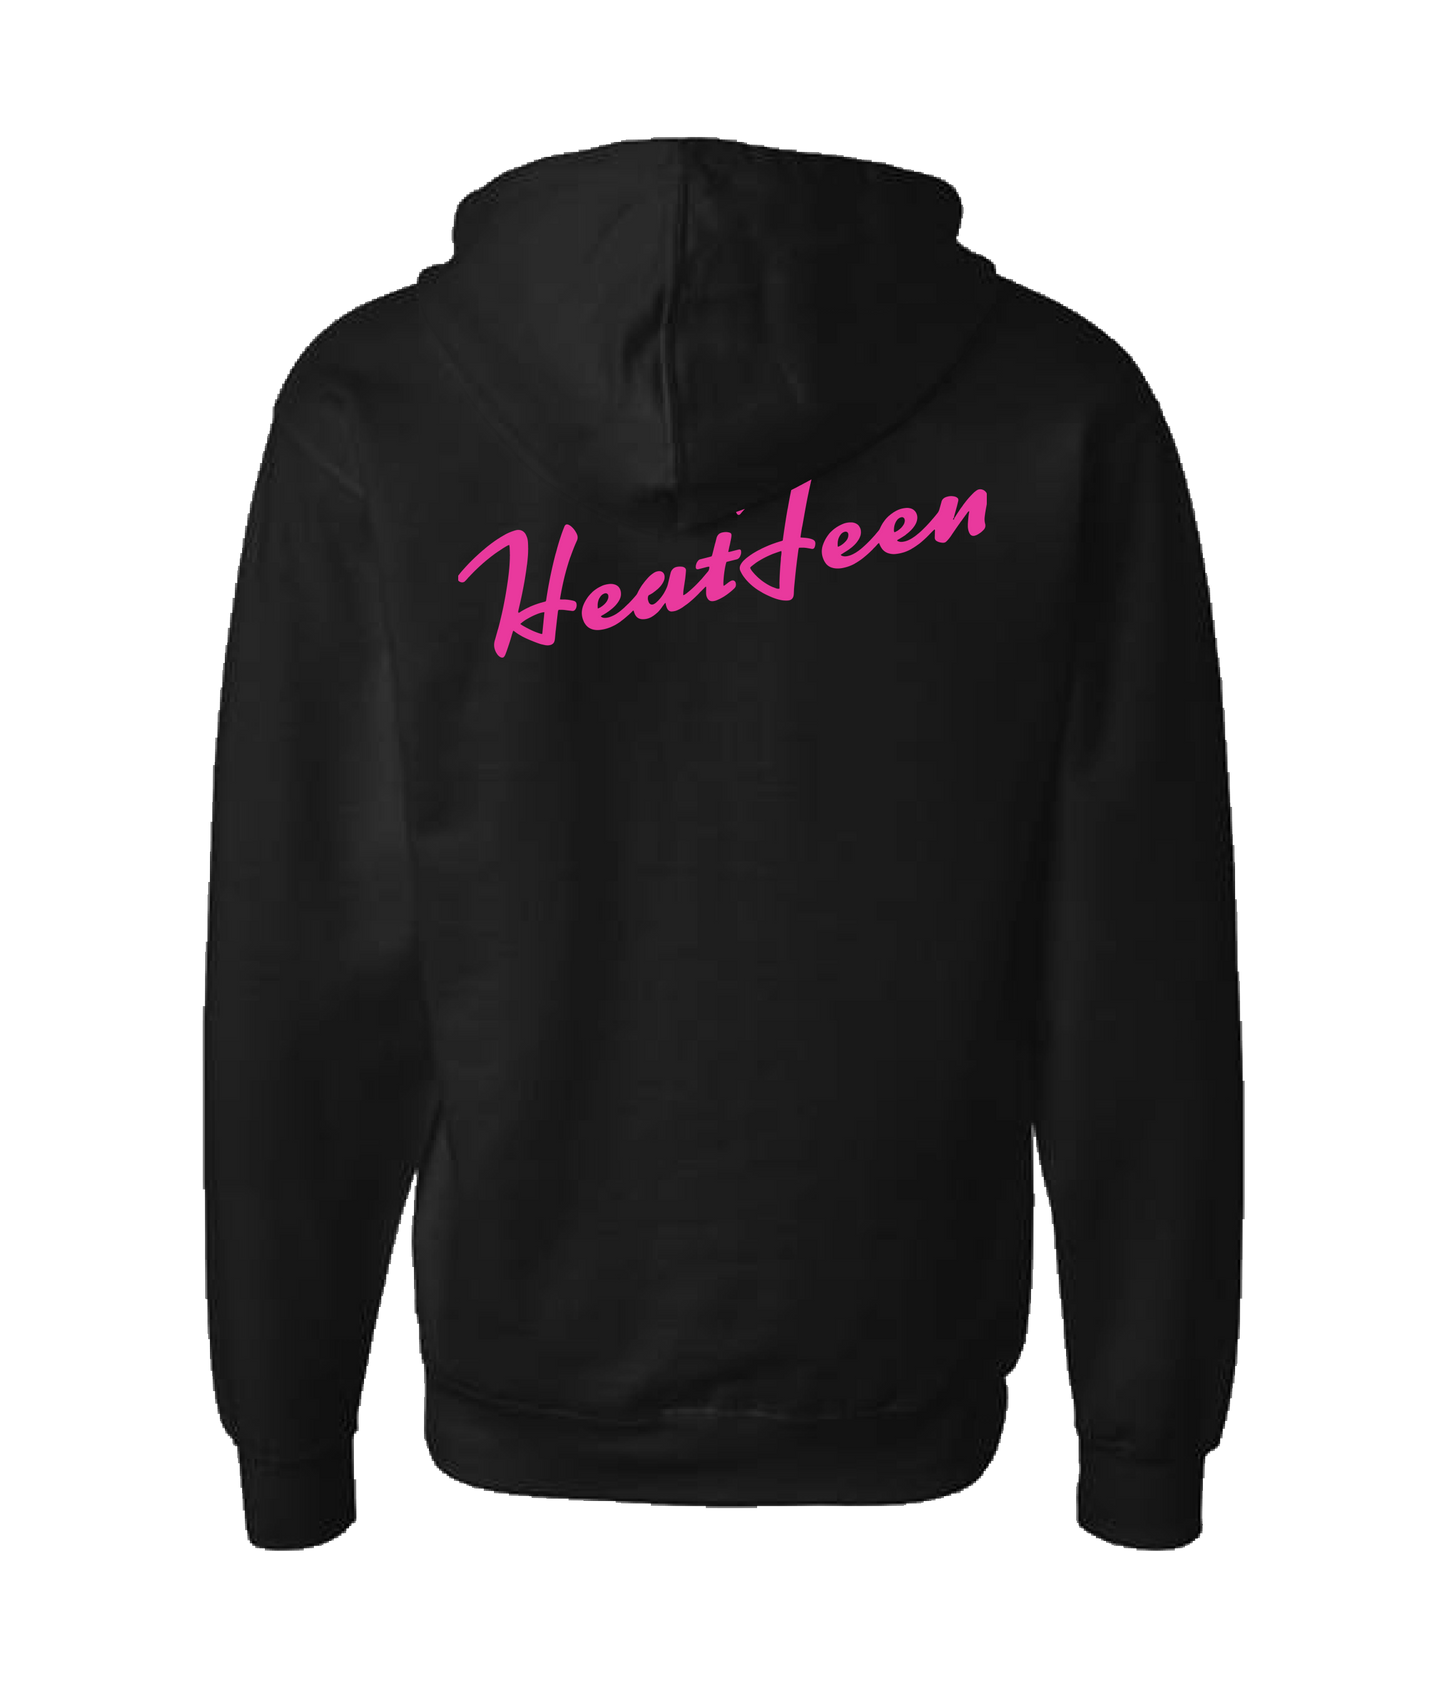 Heatfeen - Logo - Black Zip Up Hoodie